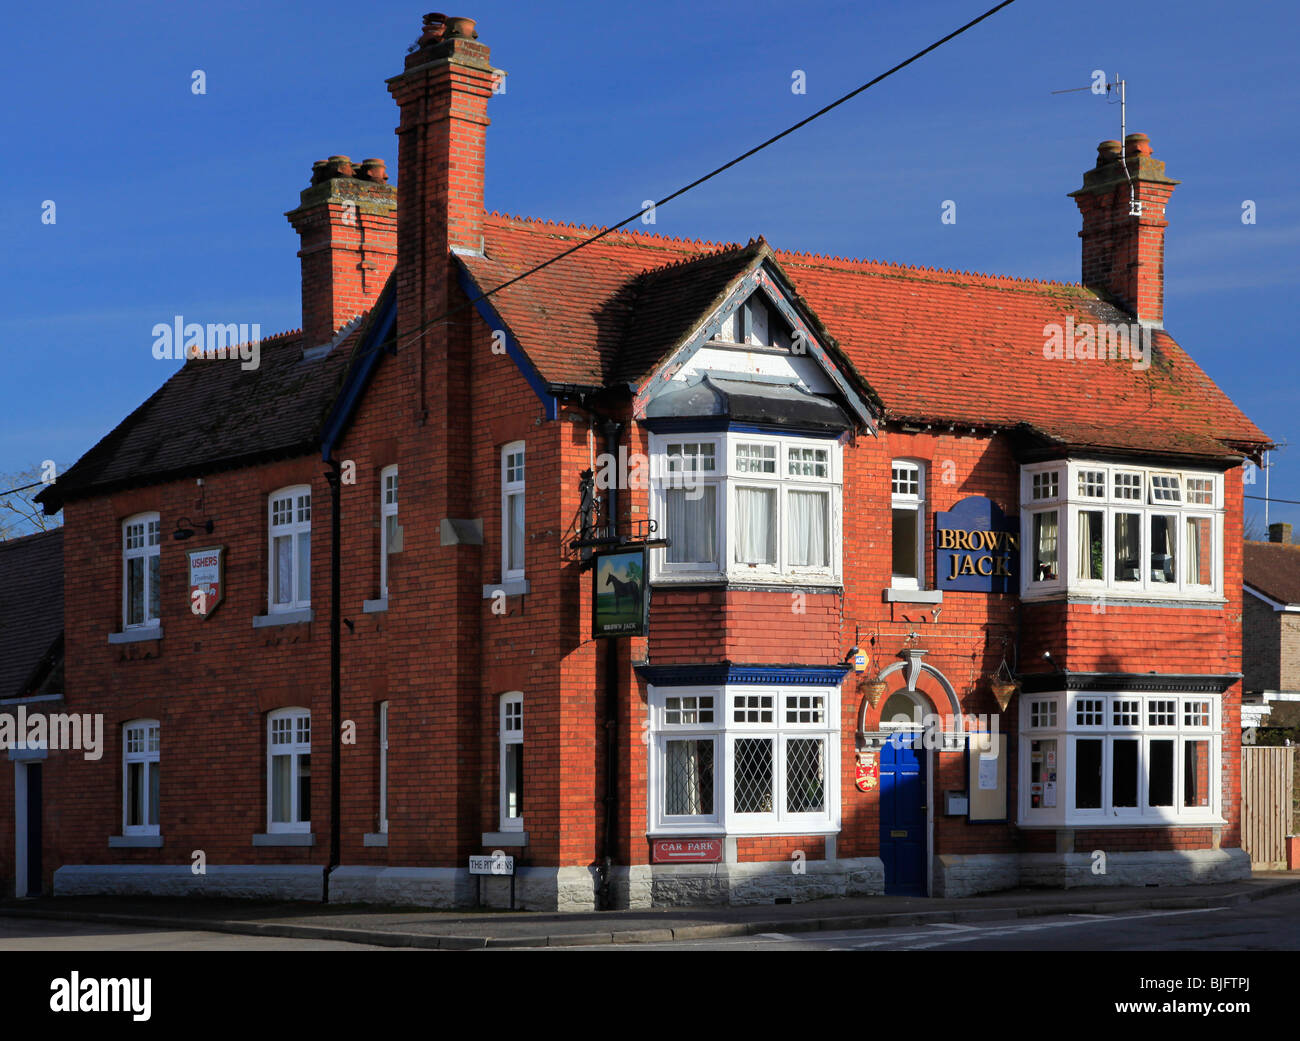 Jack Brown un pub victorien typique en briques rouges dans le Wiltshire village de Wroughton Banque D'Images